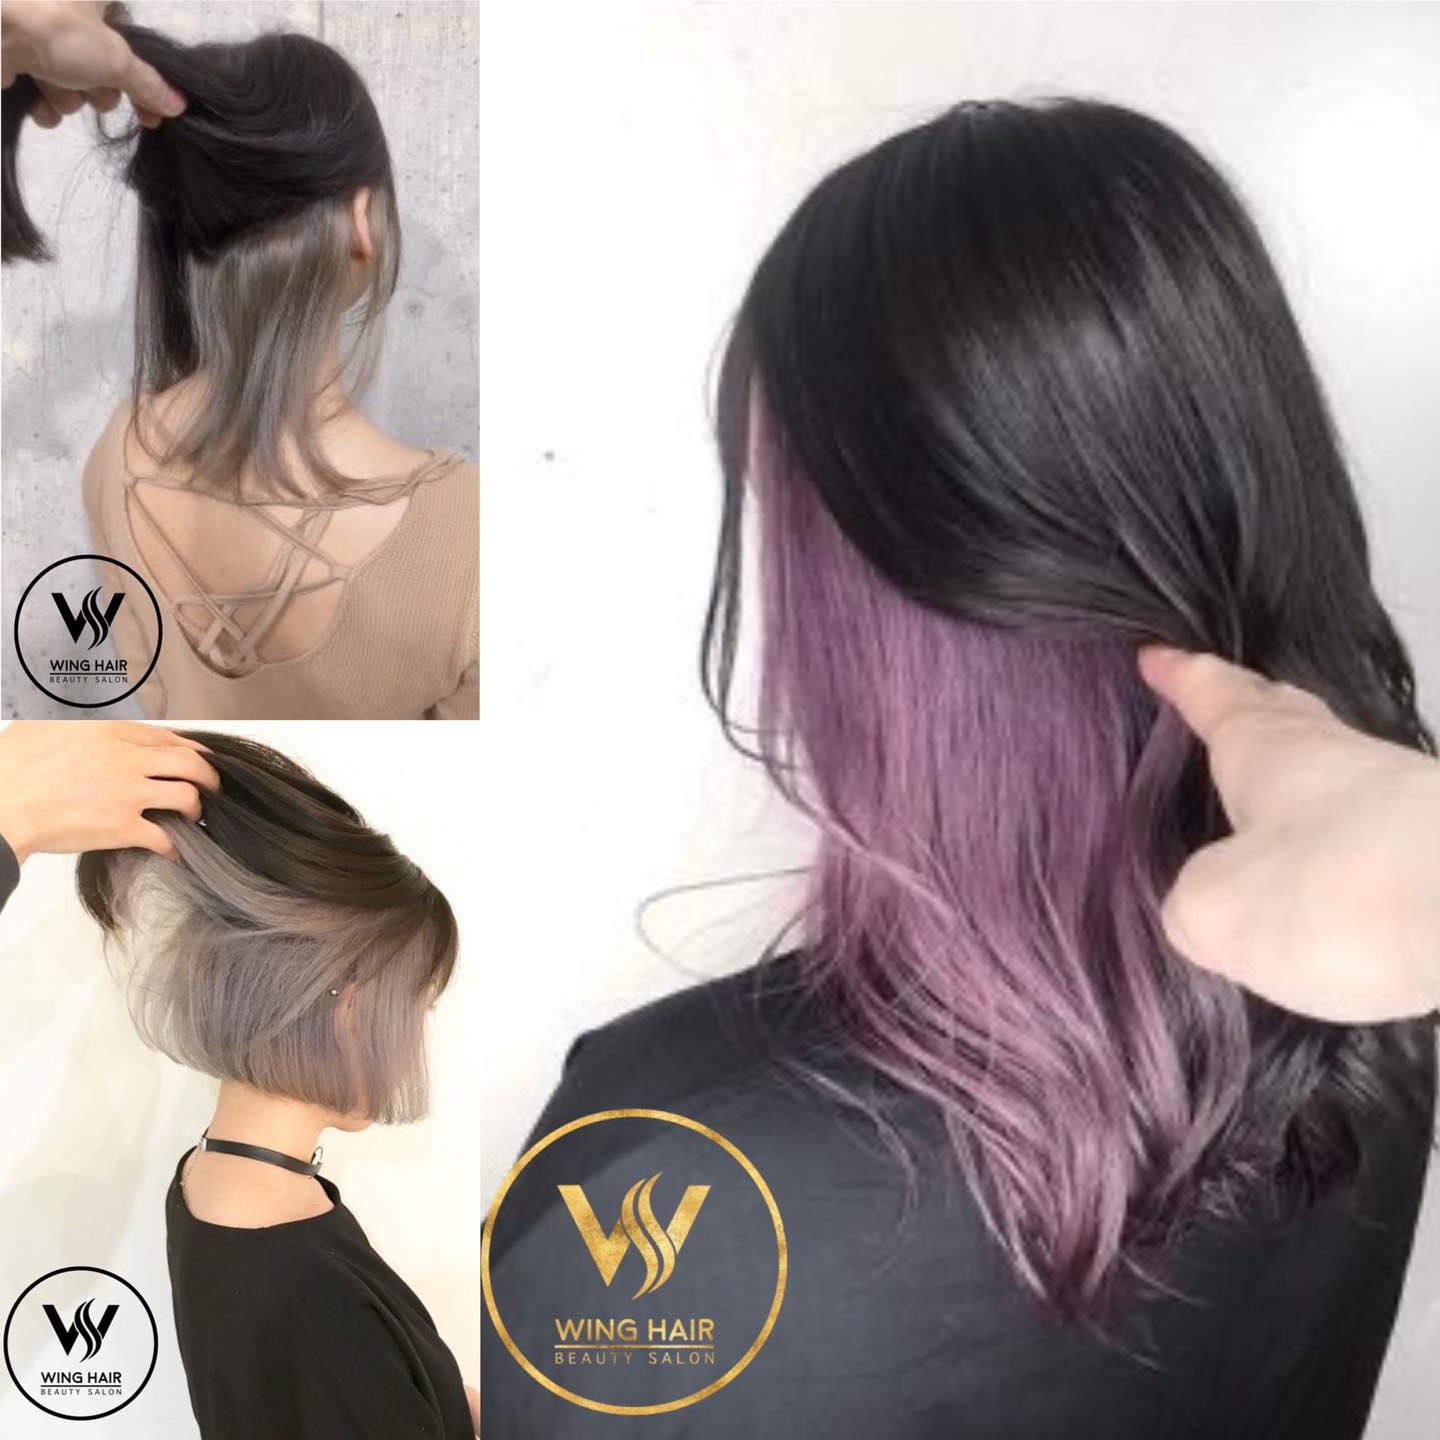 Wing Hair Salon hứa hẹn sẽ đem lại những mẫu tóc chất lượng nhất.